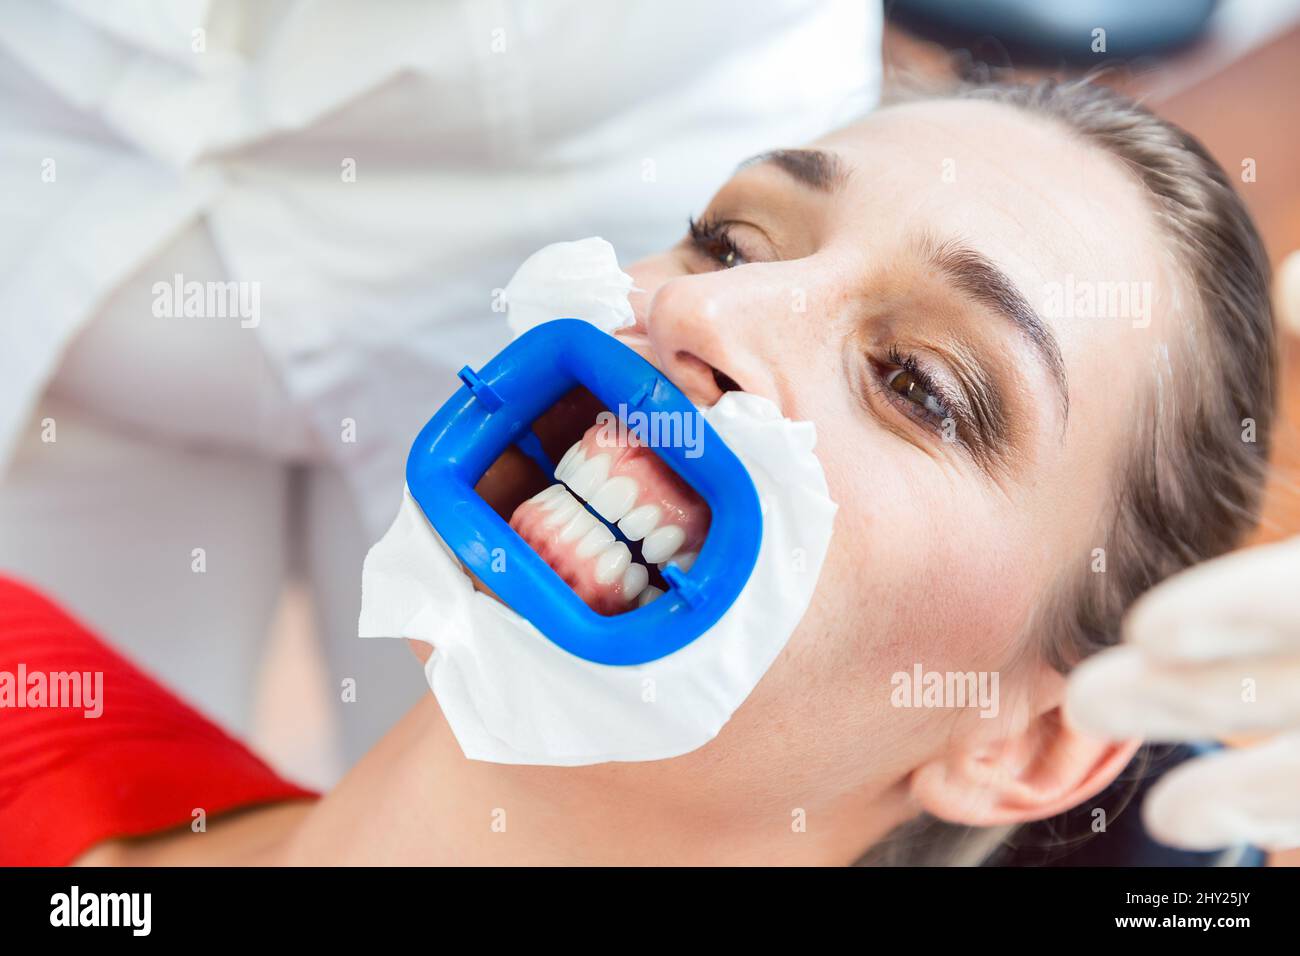 Paciente femenino sometido a un procedimiento de blanqueamiento dental Foto de stock